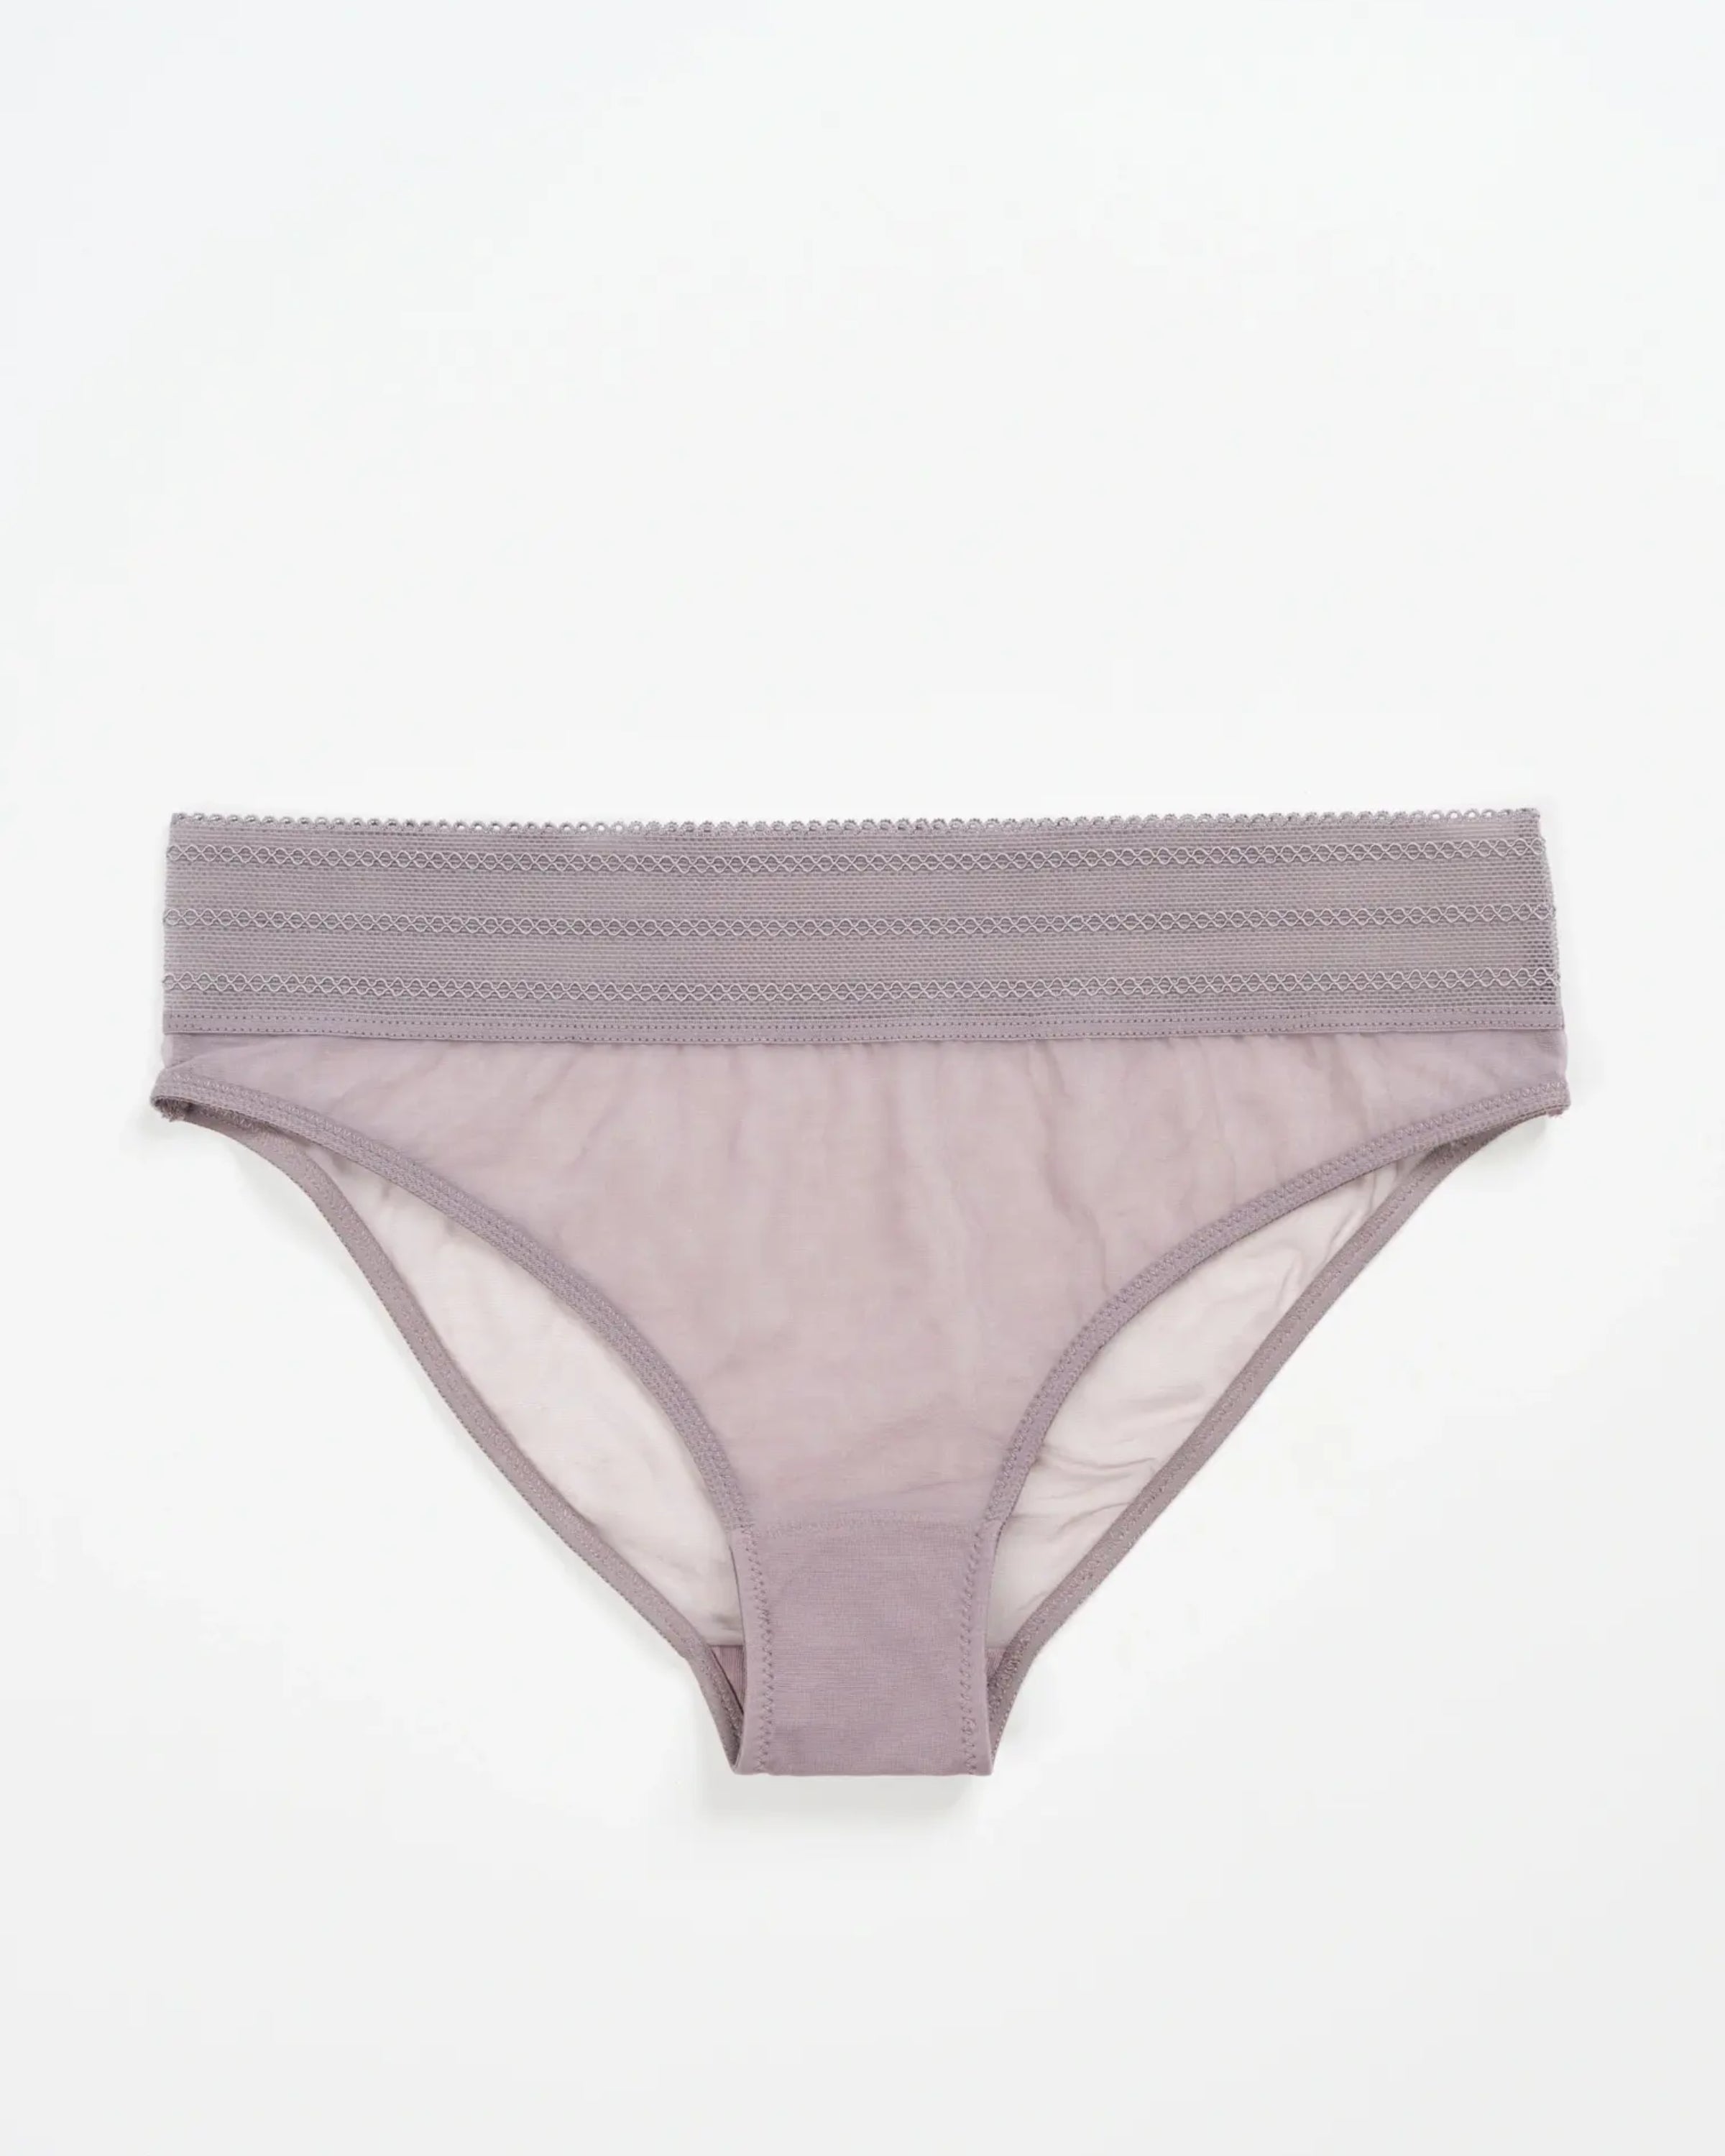 Bare Bikini Brief in Lavender